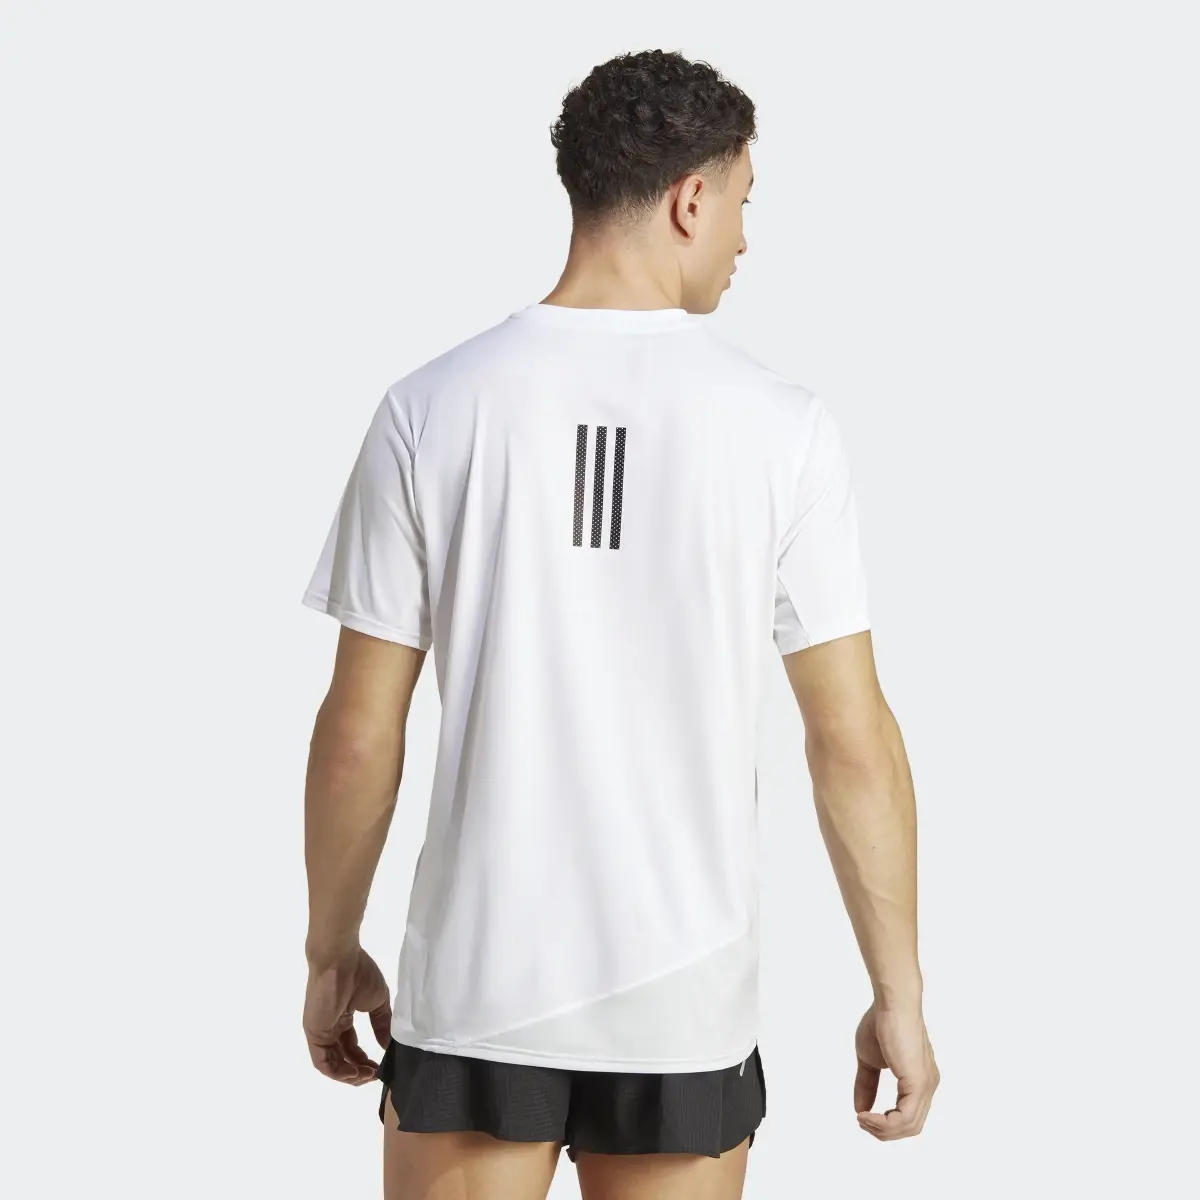 Adidas T-shirt de Running Made to be Remade. 3